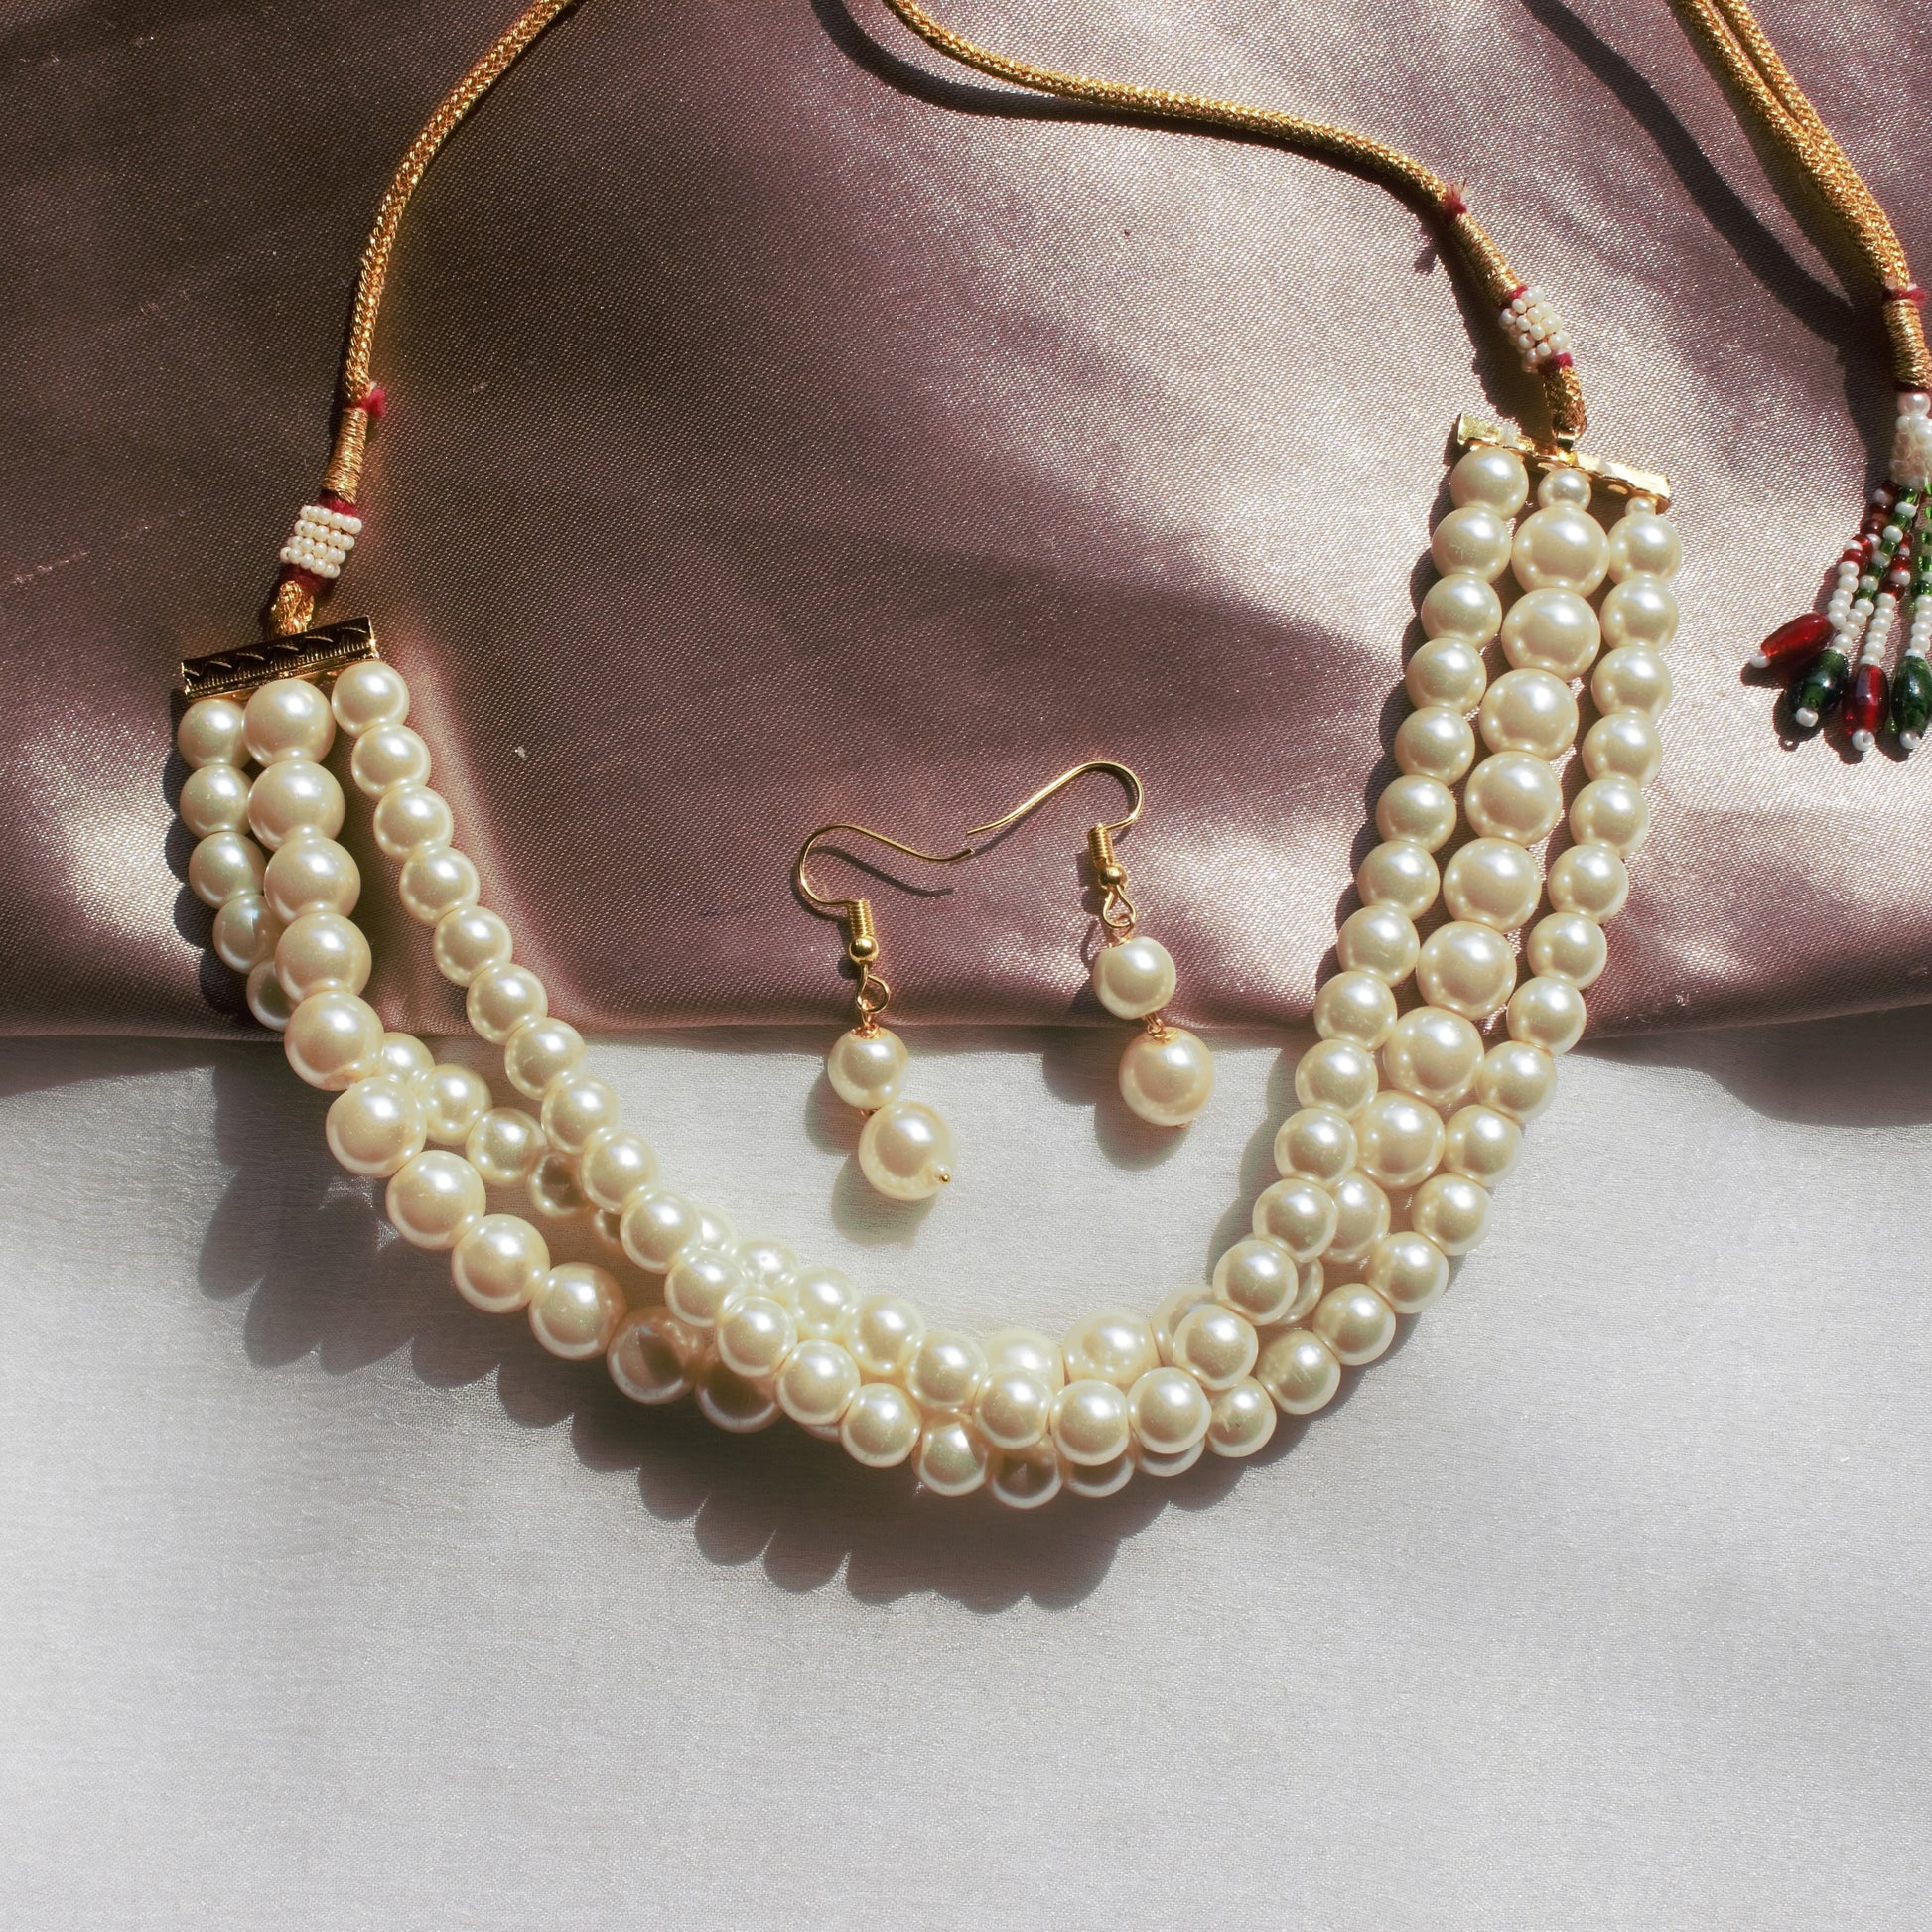 chanel no 5 pearl necklace vintage